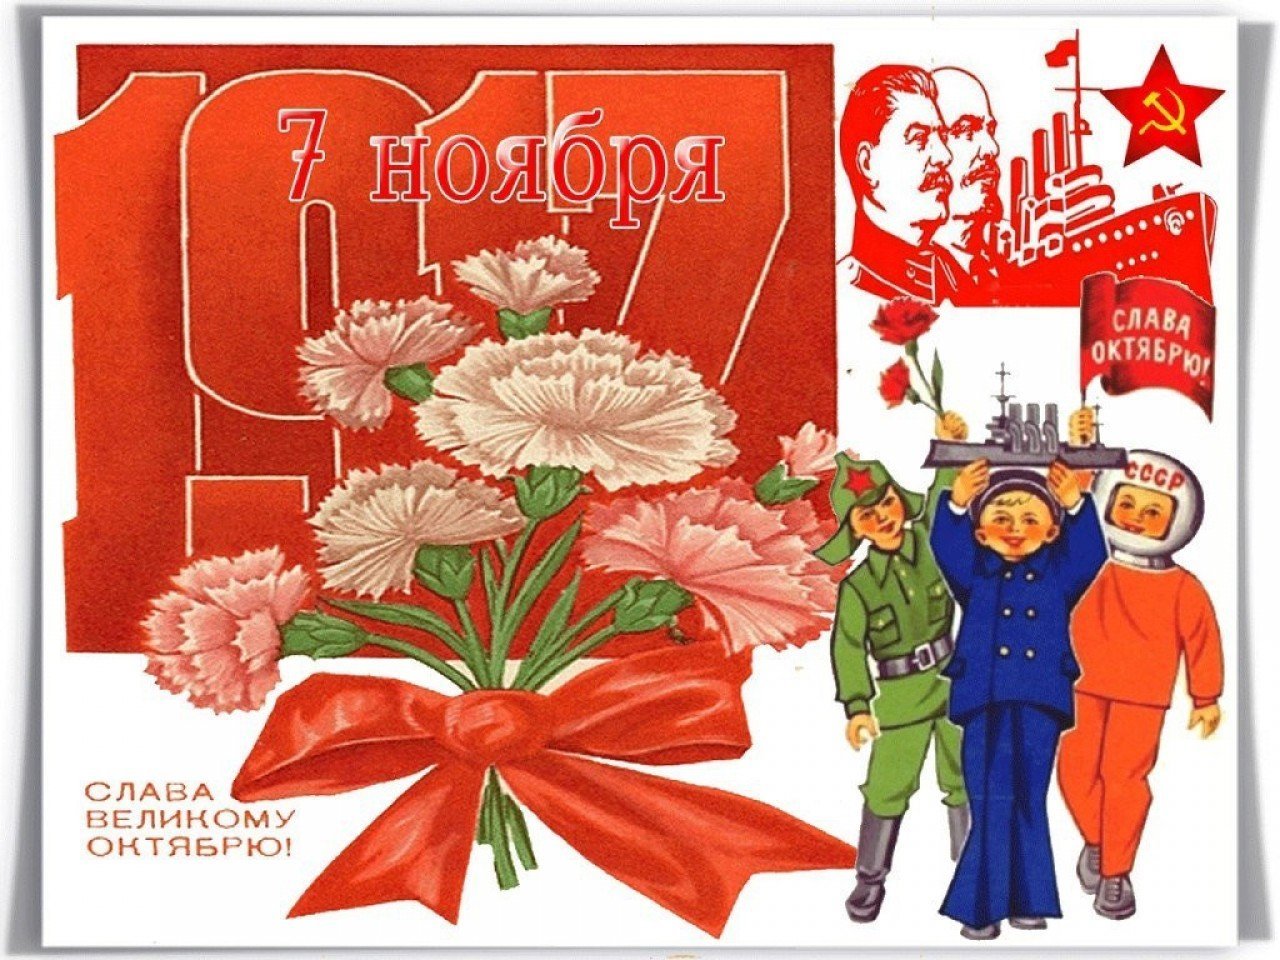 Ноября день революции. 7 Ноября. С днём 7 ноября поздравления. С праздником Великого октября. С днем Октябрьской революции.